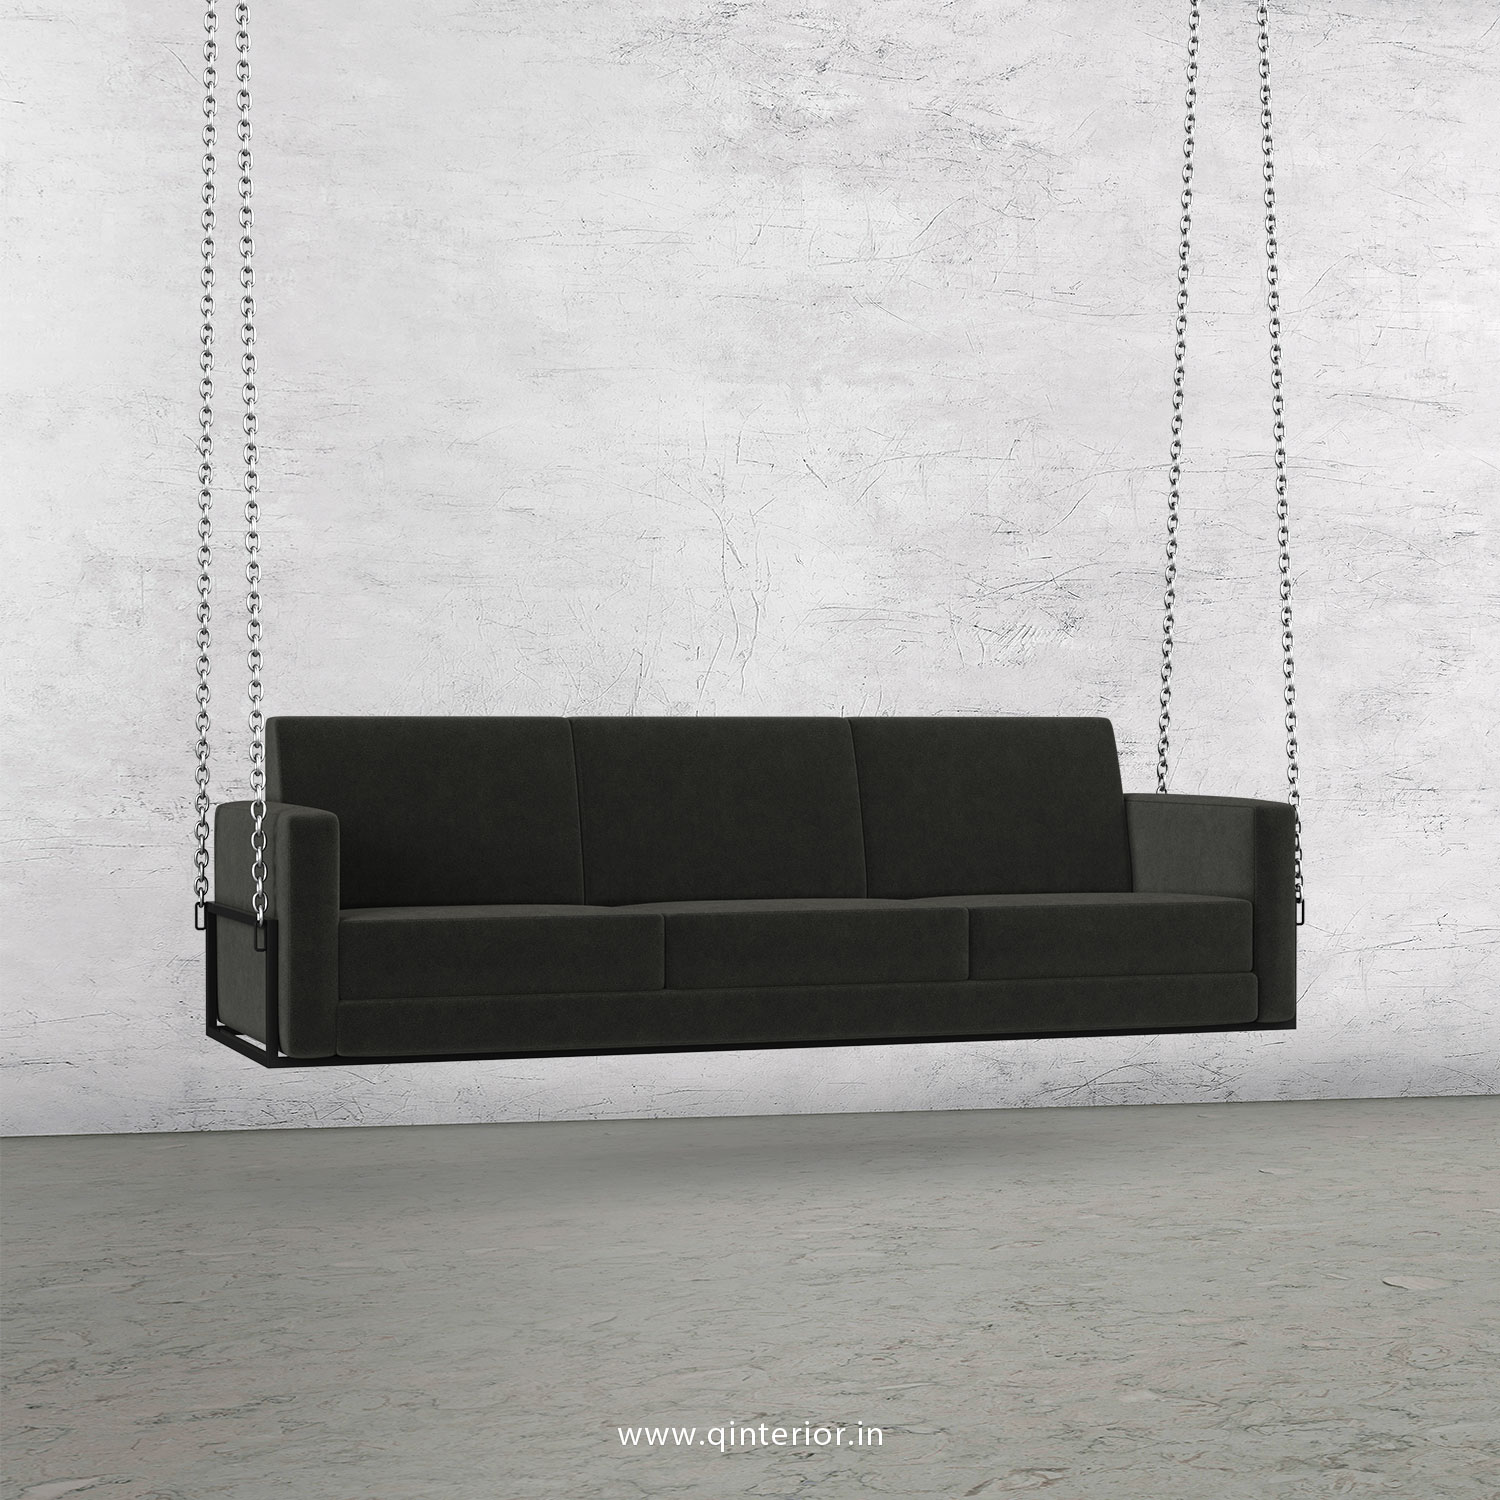 NIRVANA 3 Seater Swing Sofa in Velvet Fabric - SSF001 VL07